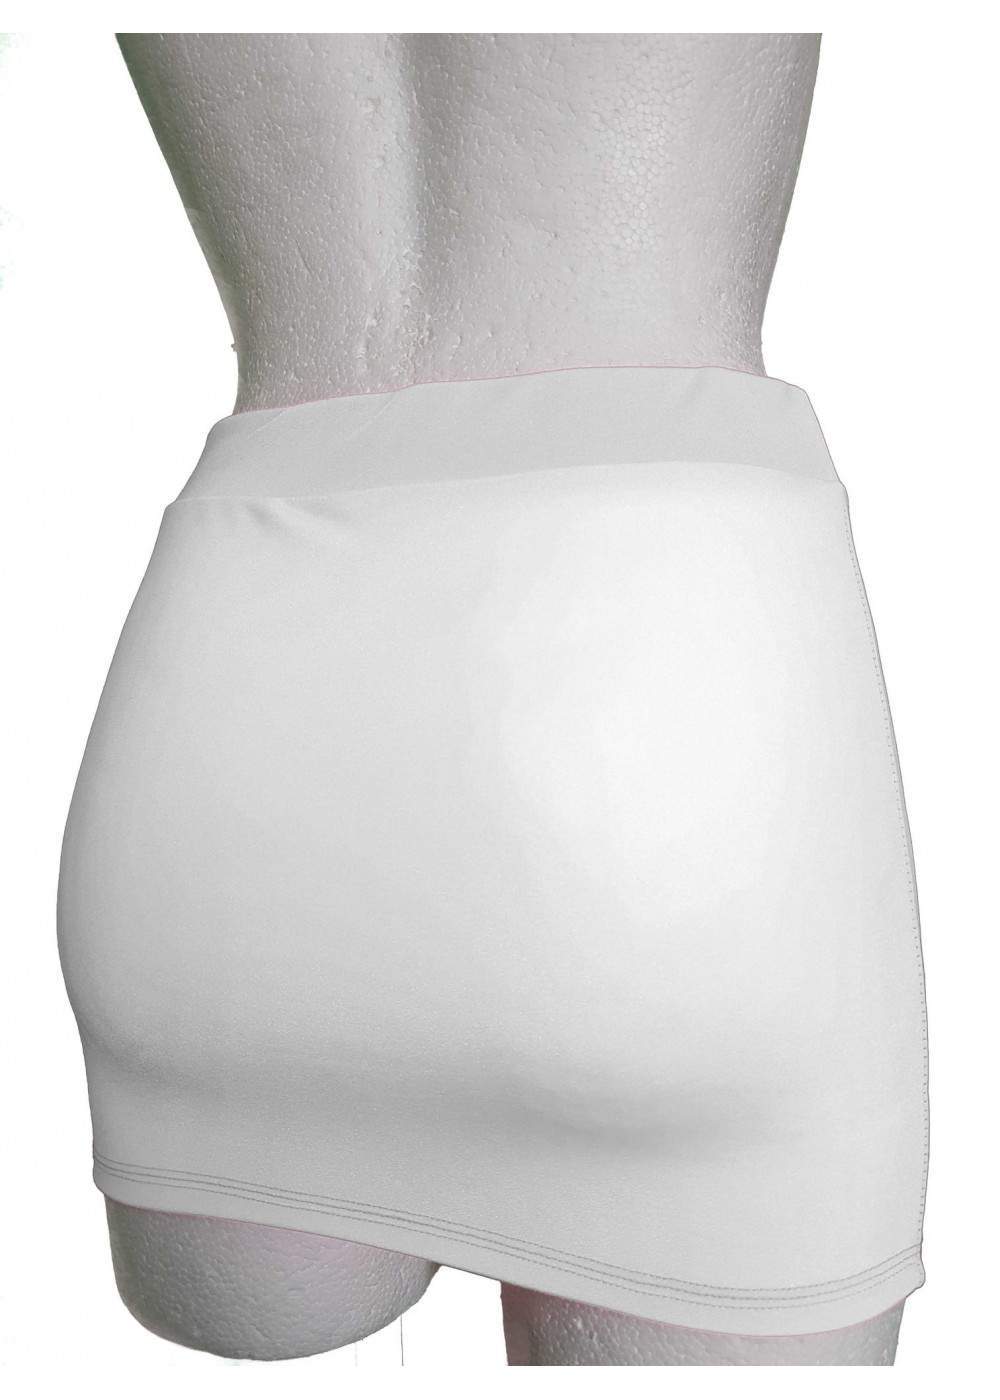 black week Save 15% Lycra skirt in 4 colors - 